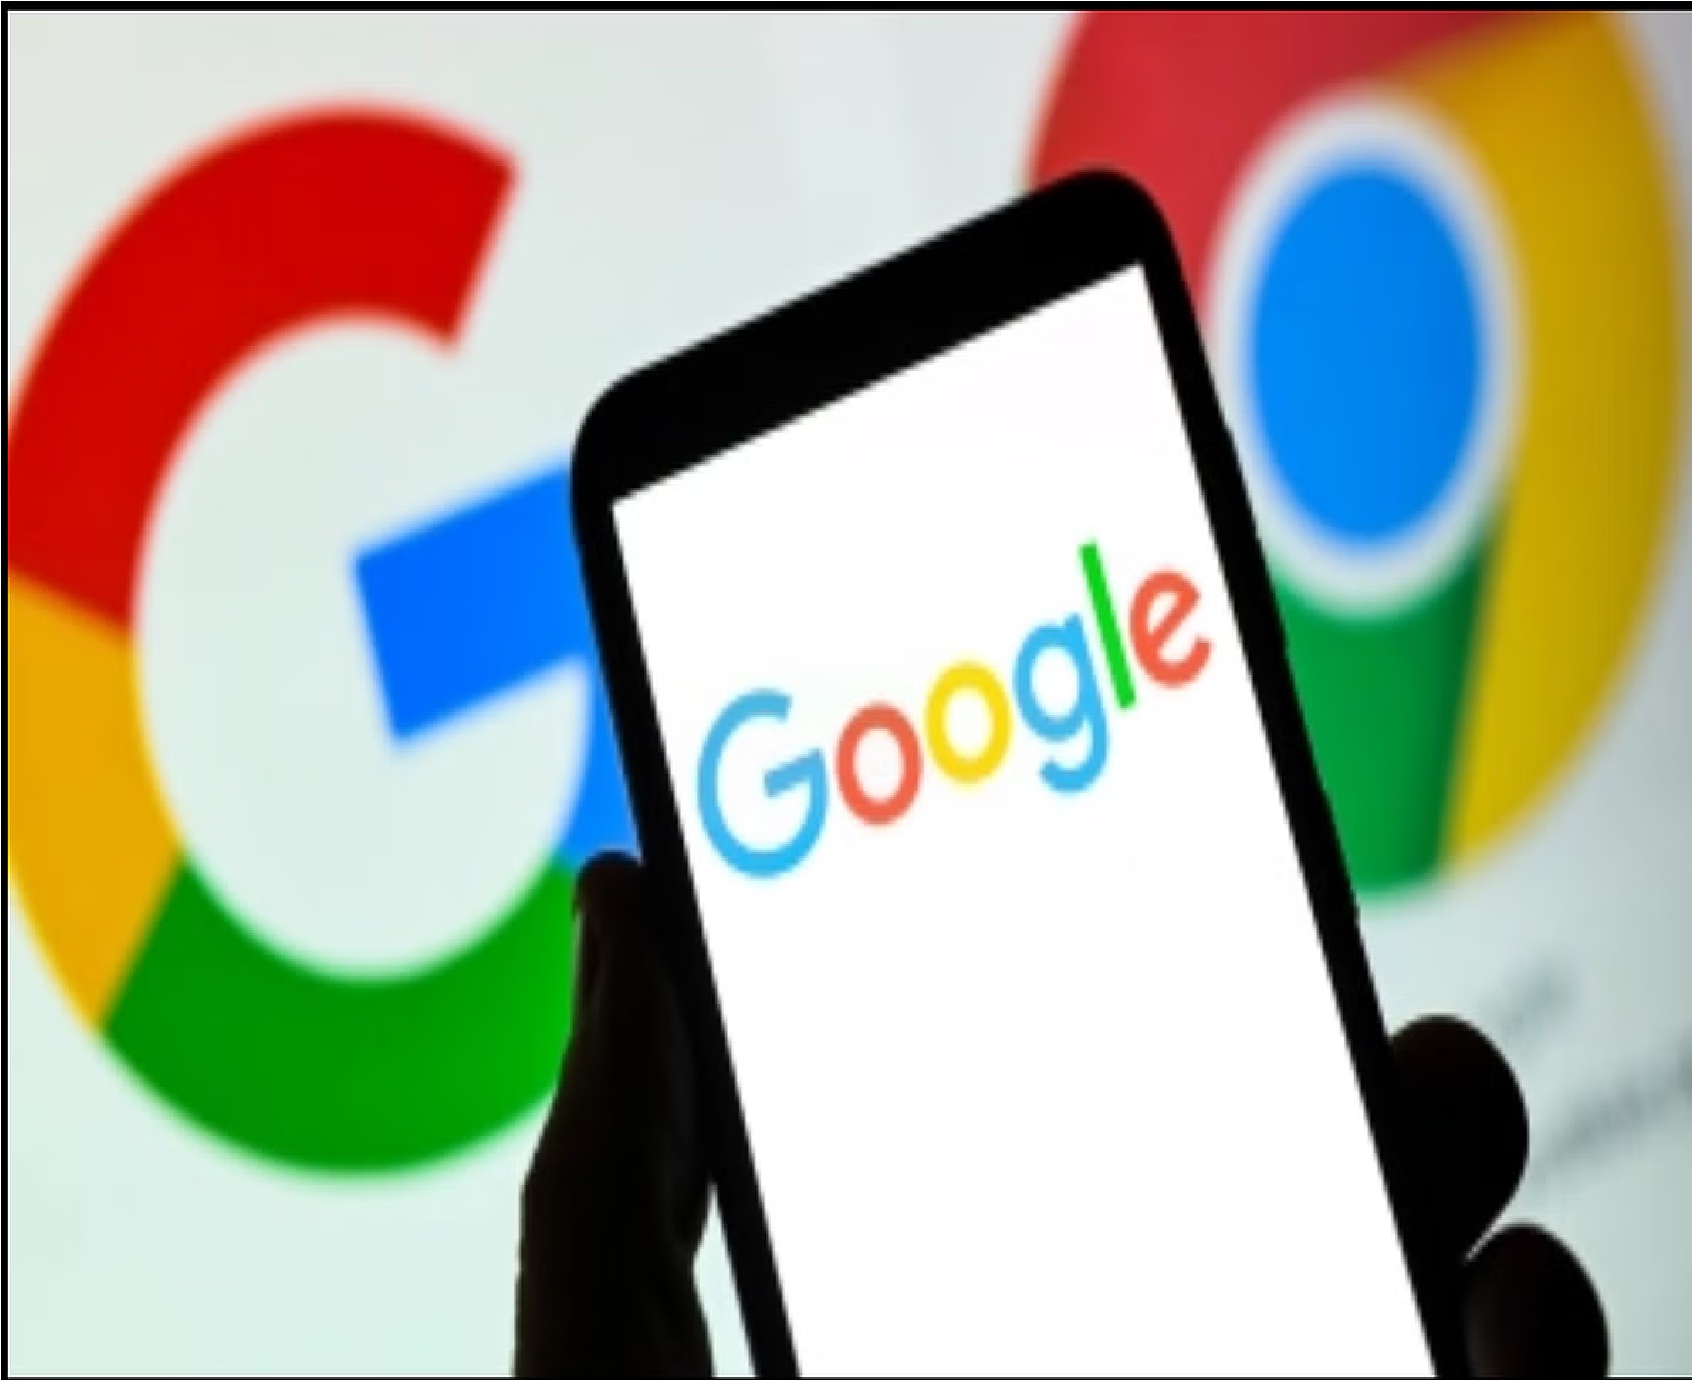 Android फोन्स के लिए गूगल ने जारी किया बड़ा फीचर, बंद होने पर भी खोजे जा सकेंगे गुम हुए डिवाइस